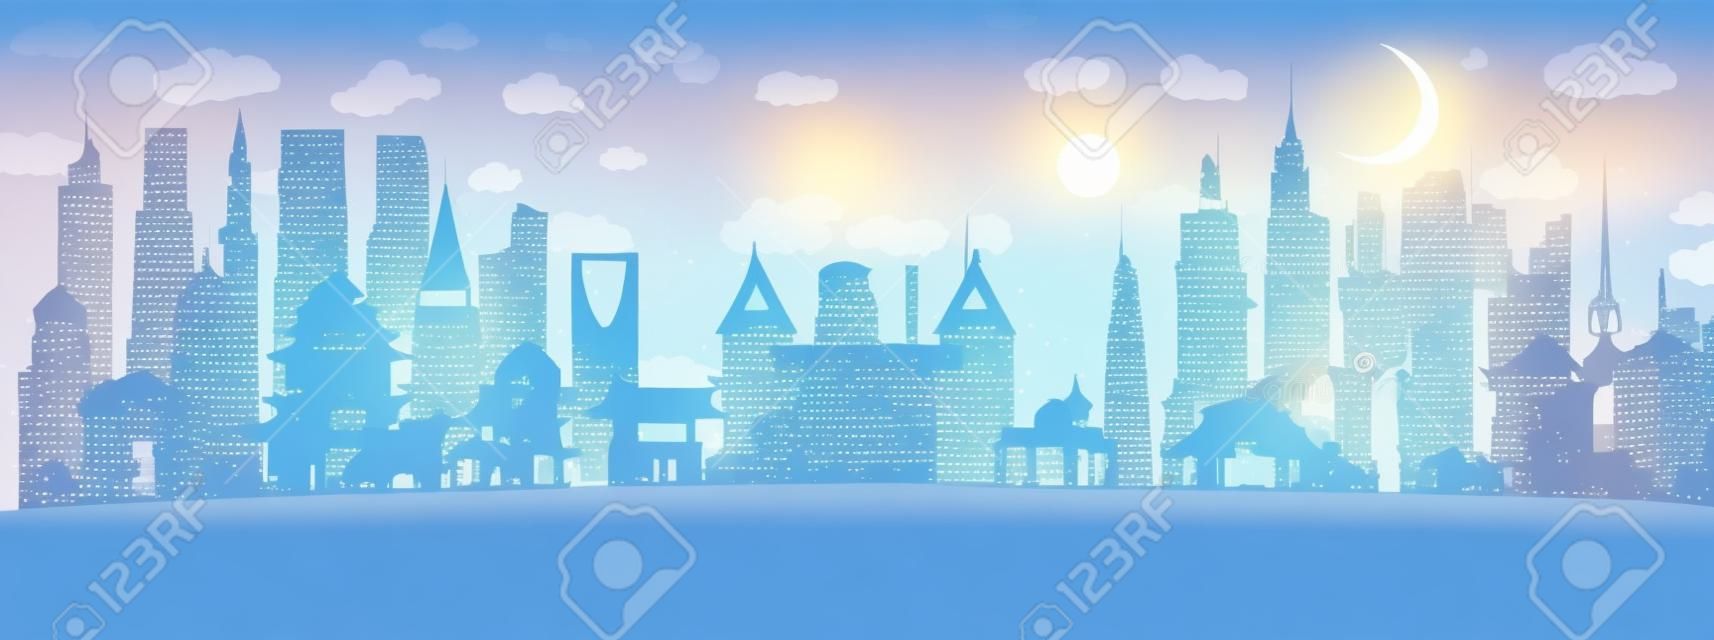 Asia City Skyline en papier découpé avec flocons de neige, lune et guirlande de néon. Illustration vectorielle. Concept de Noël et du nouvel an. Père Noël sur traîneau.